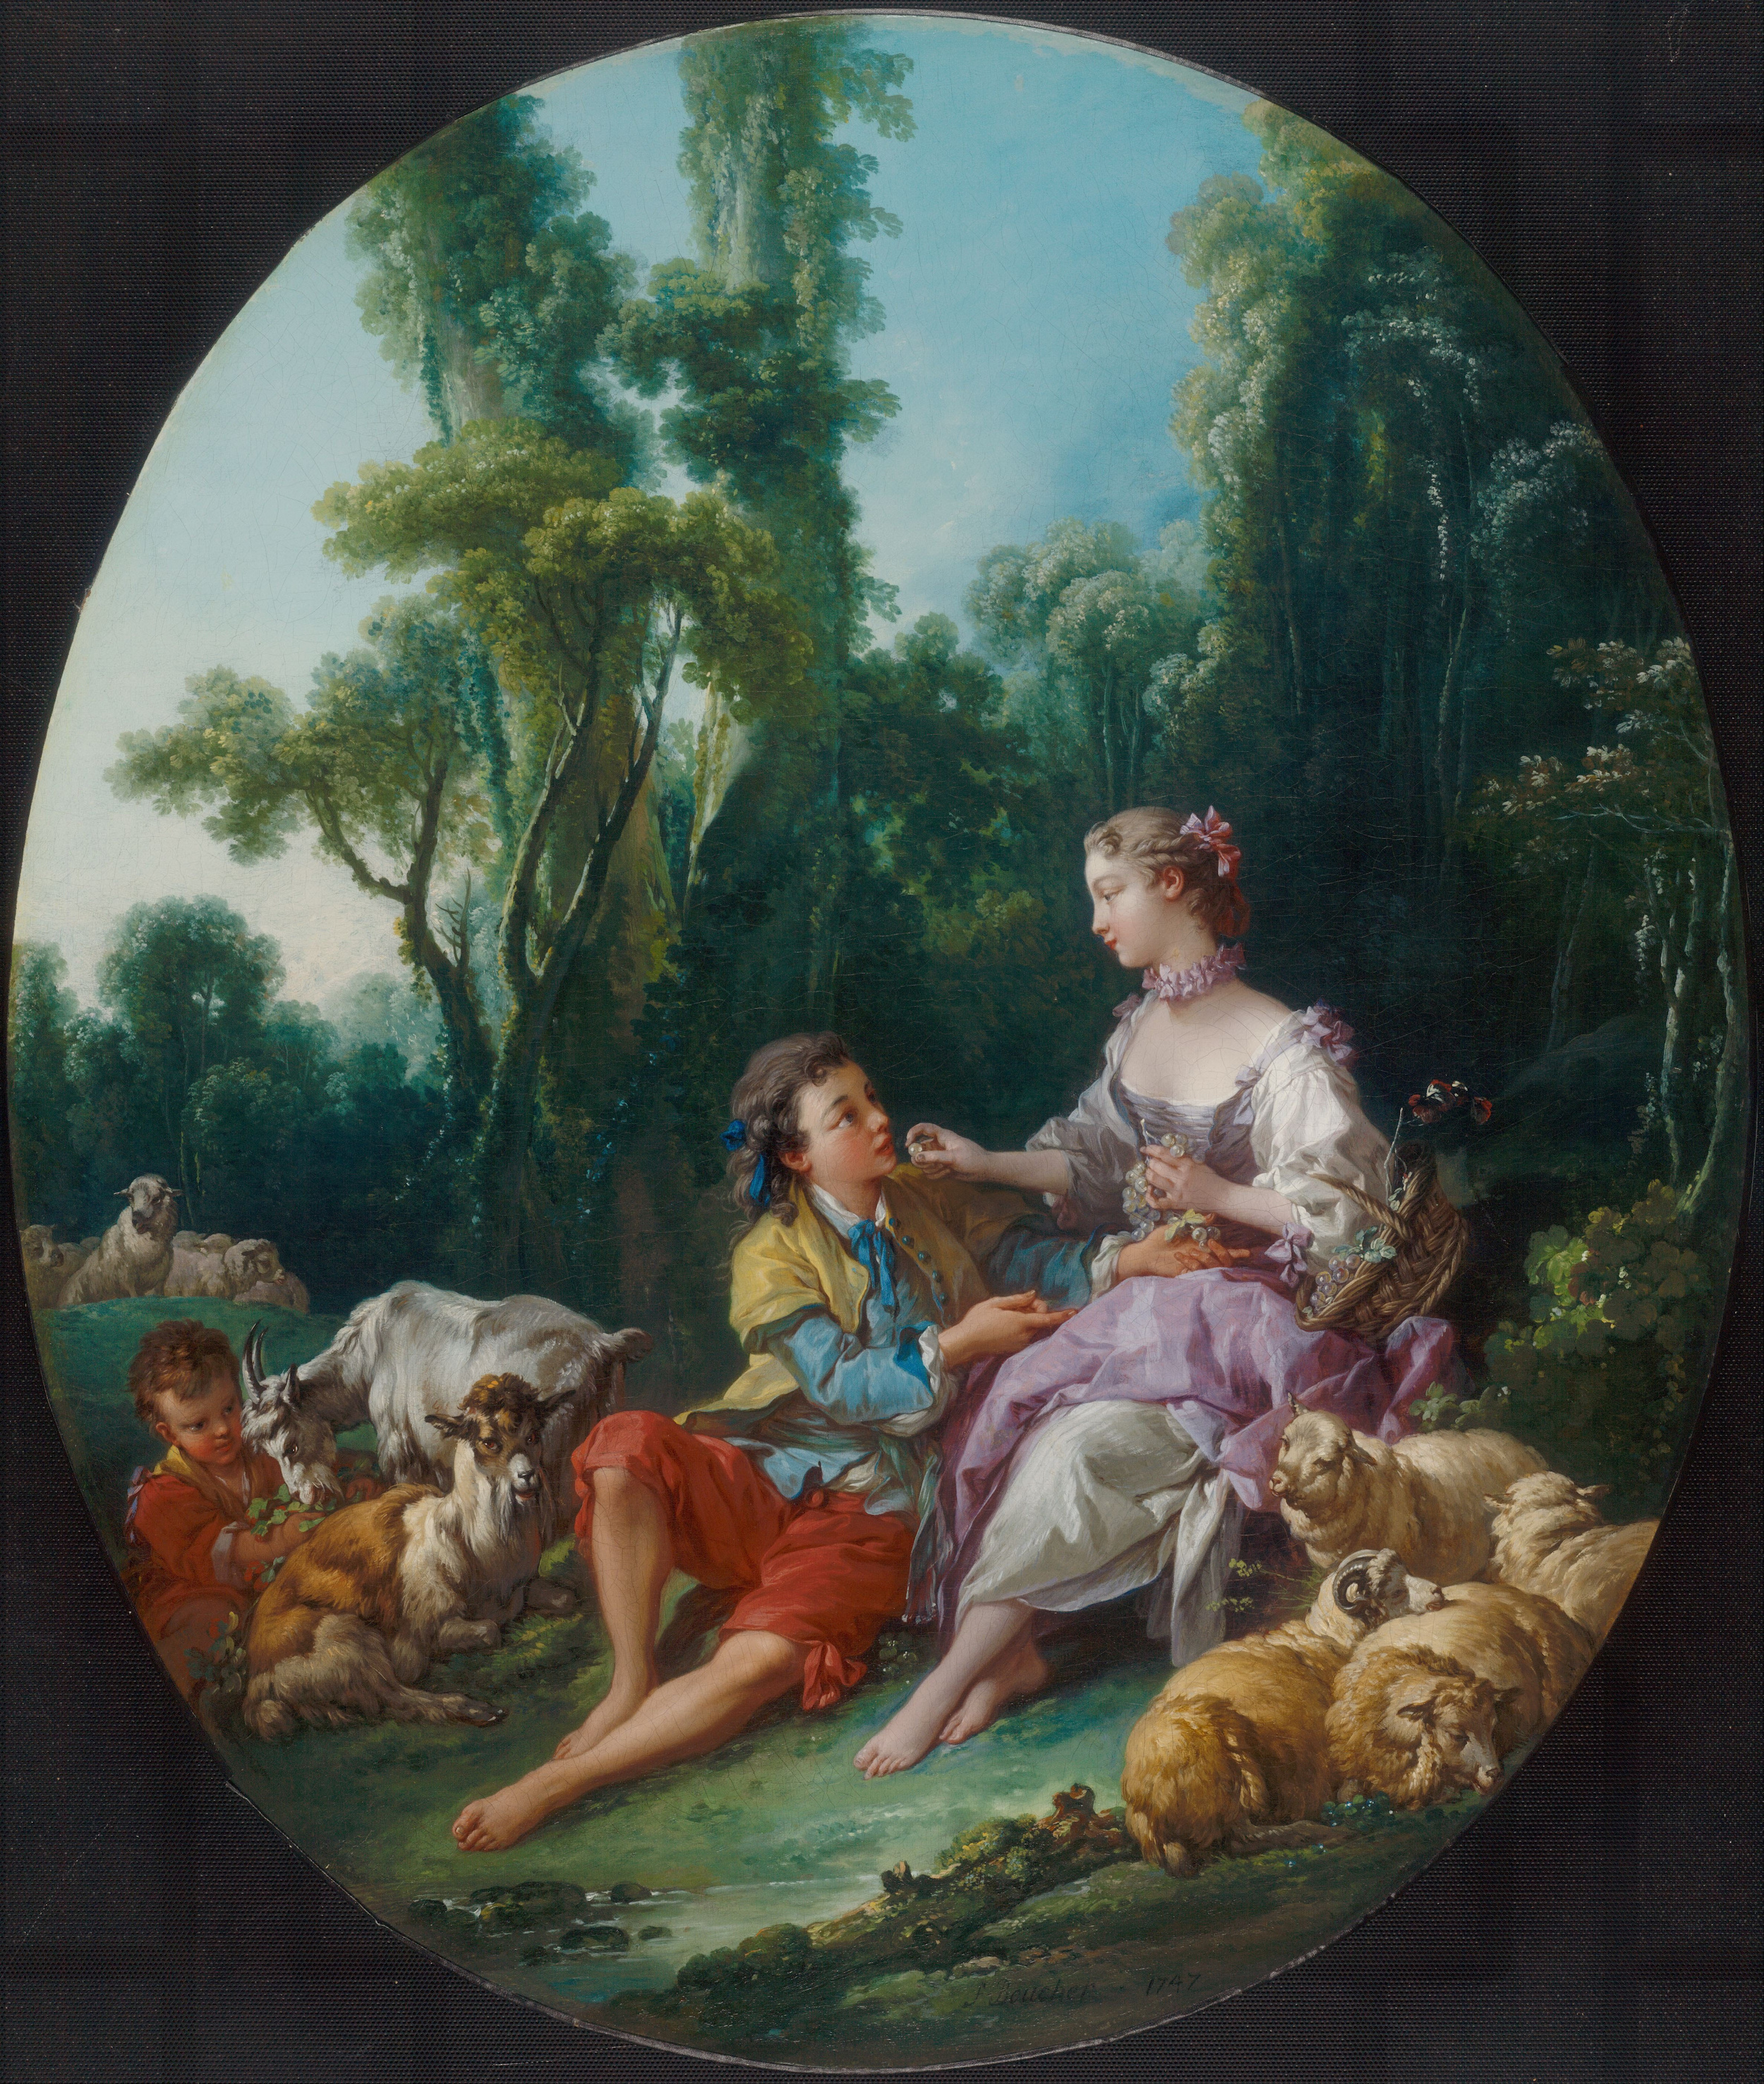 Üzüm Hakkında Mı Düşünüyorlar? by François Boucher - 1747 Art Institute of Chicago